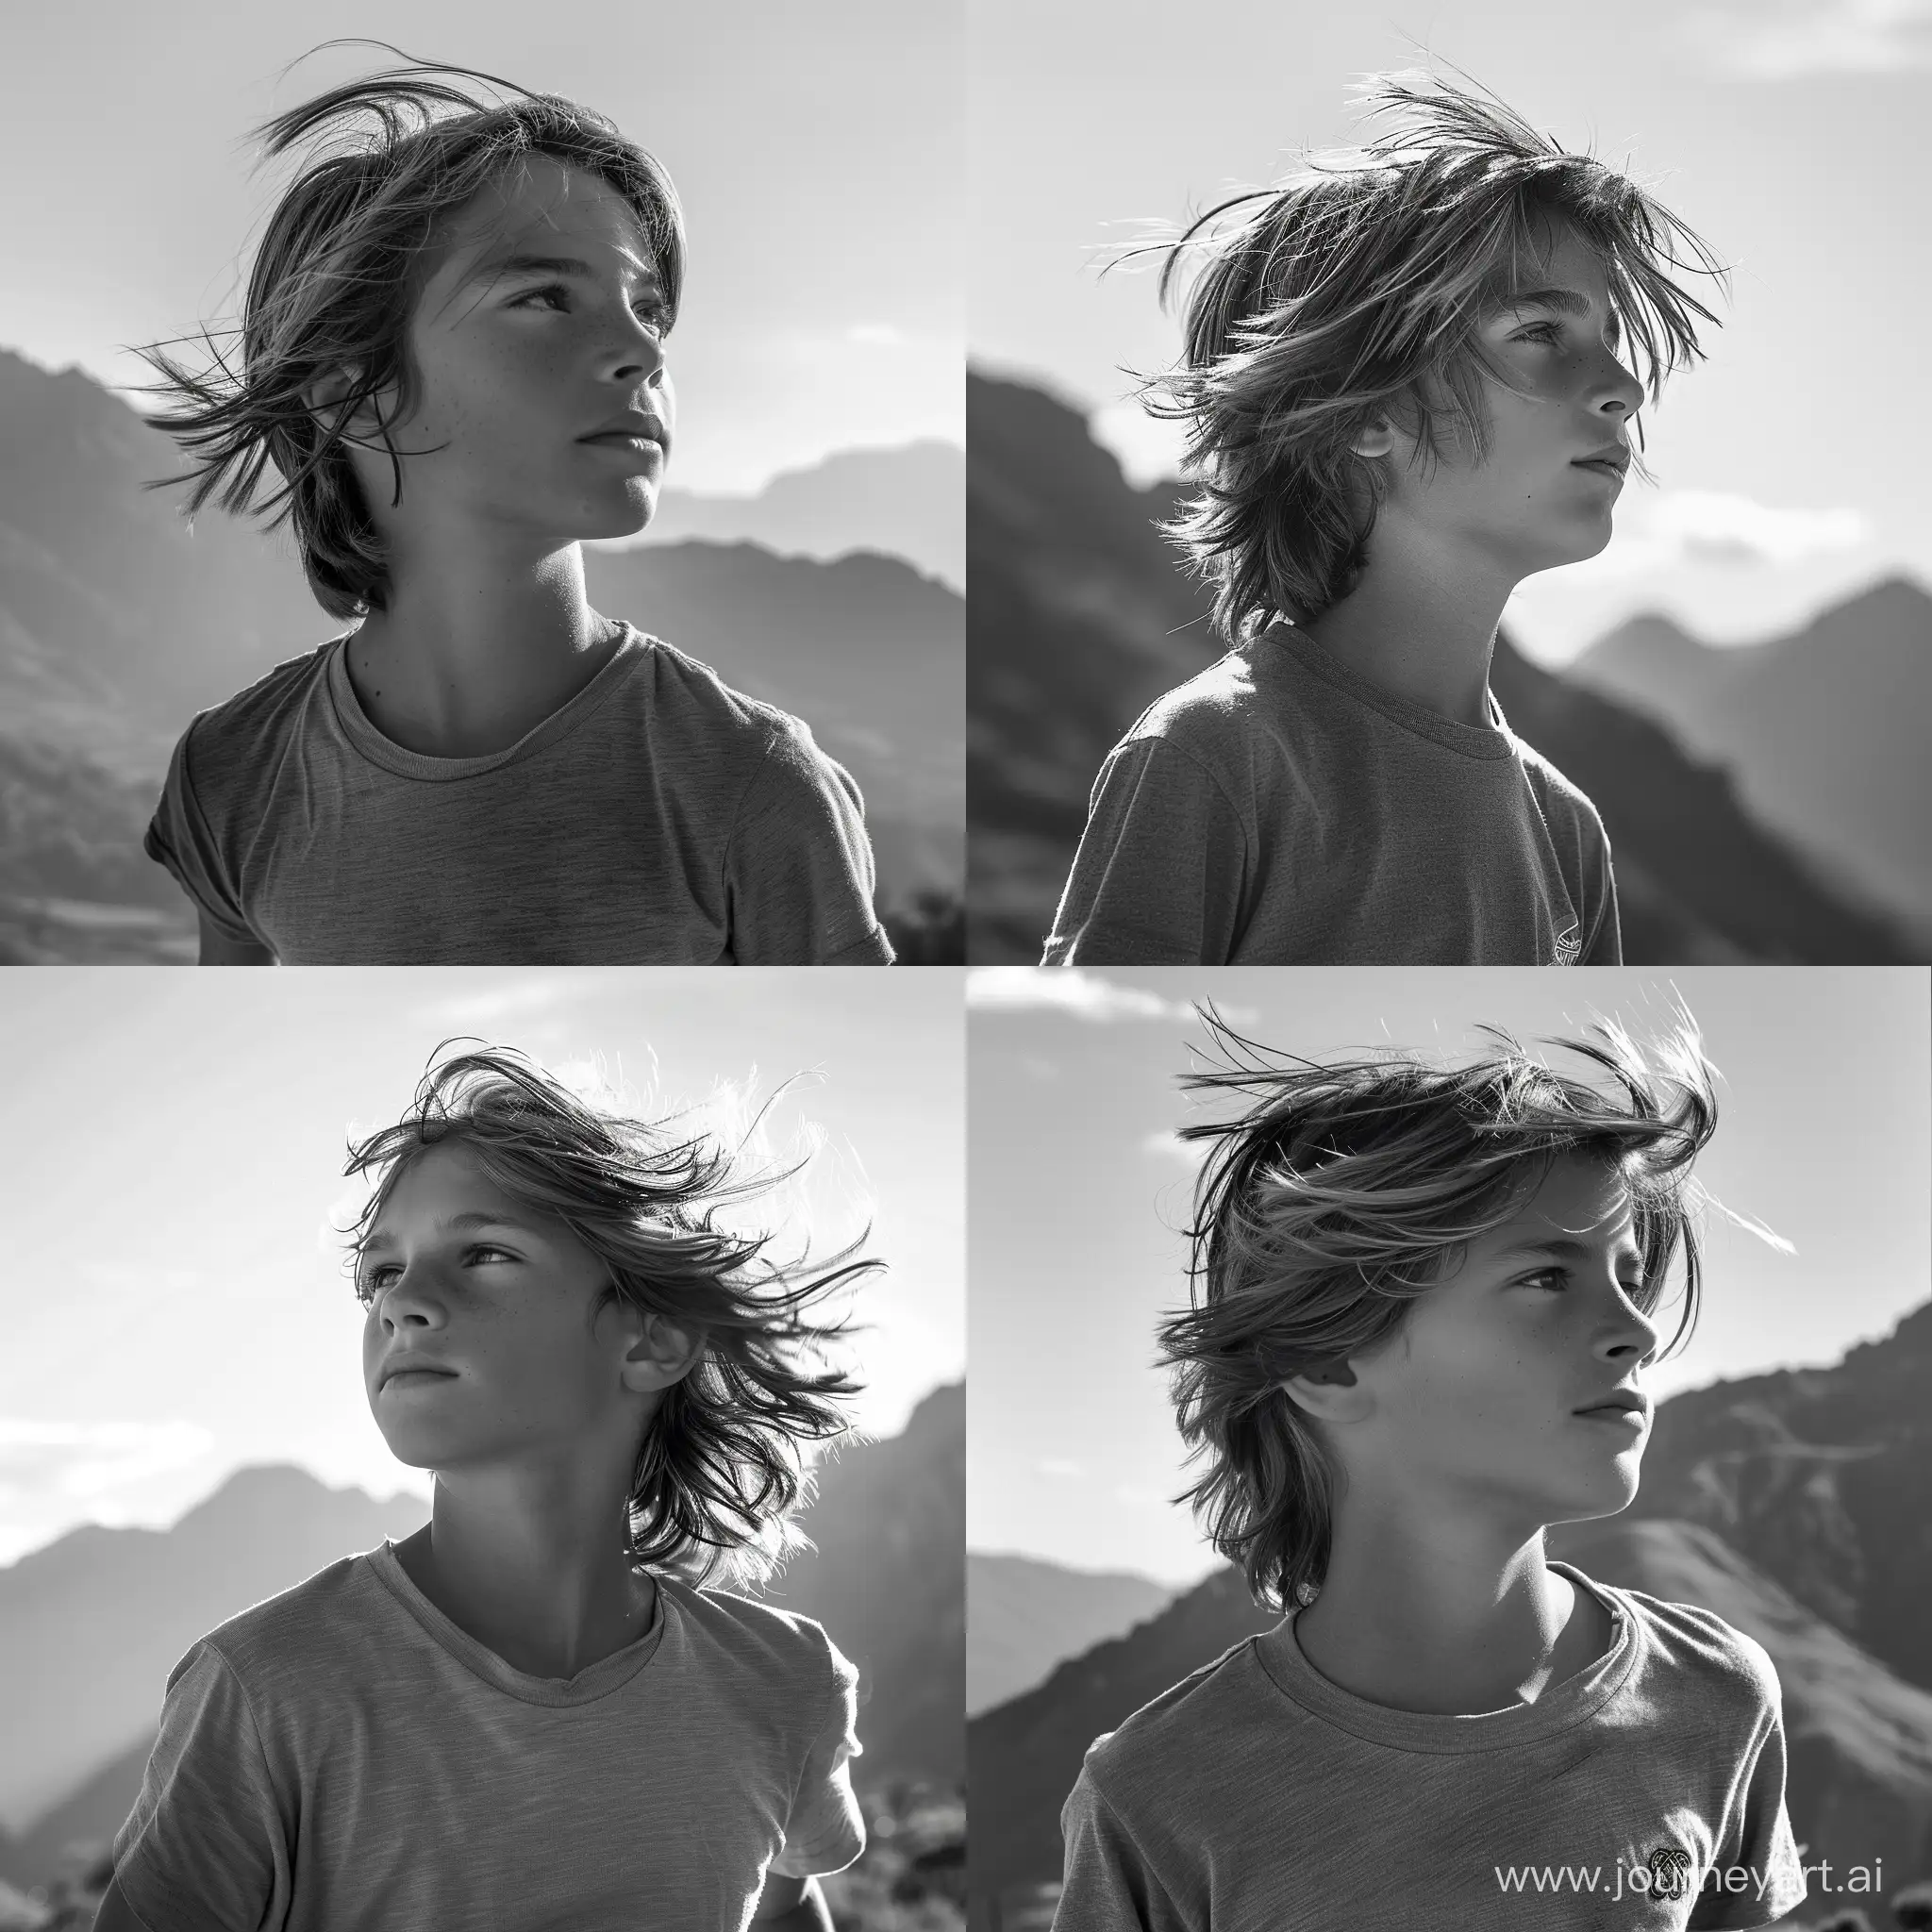 фото, мальчик 12 лет,профиль, по грудь,анфас,смотрит в даль,в майке на фоне гор,ветер развивает длинные волосы,яркие рефлекс